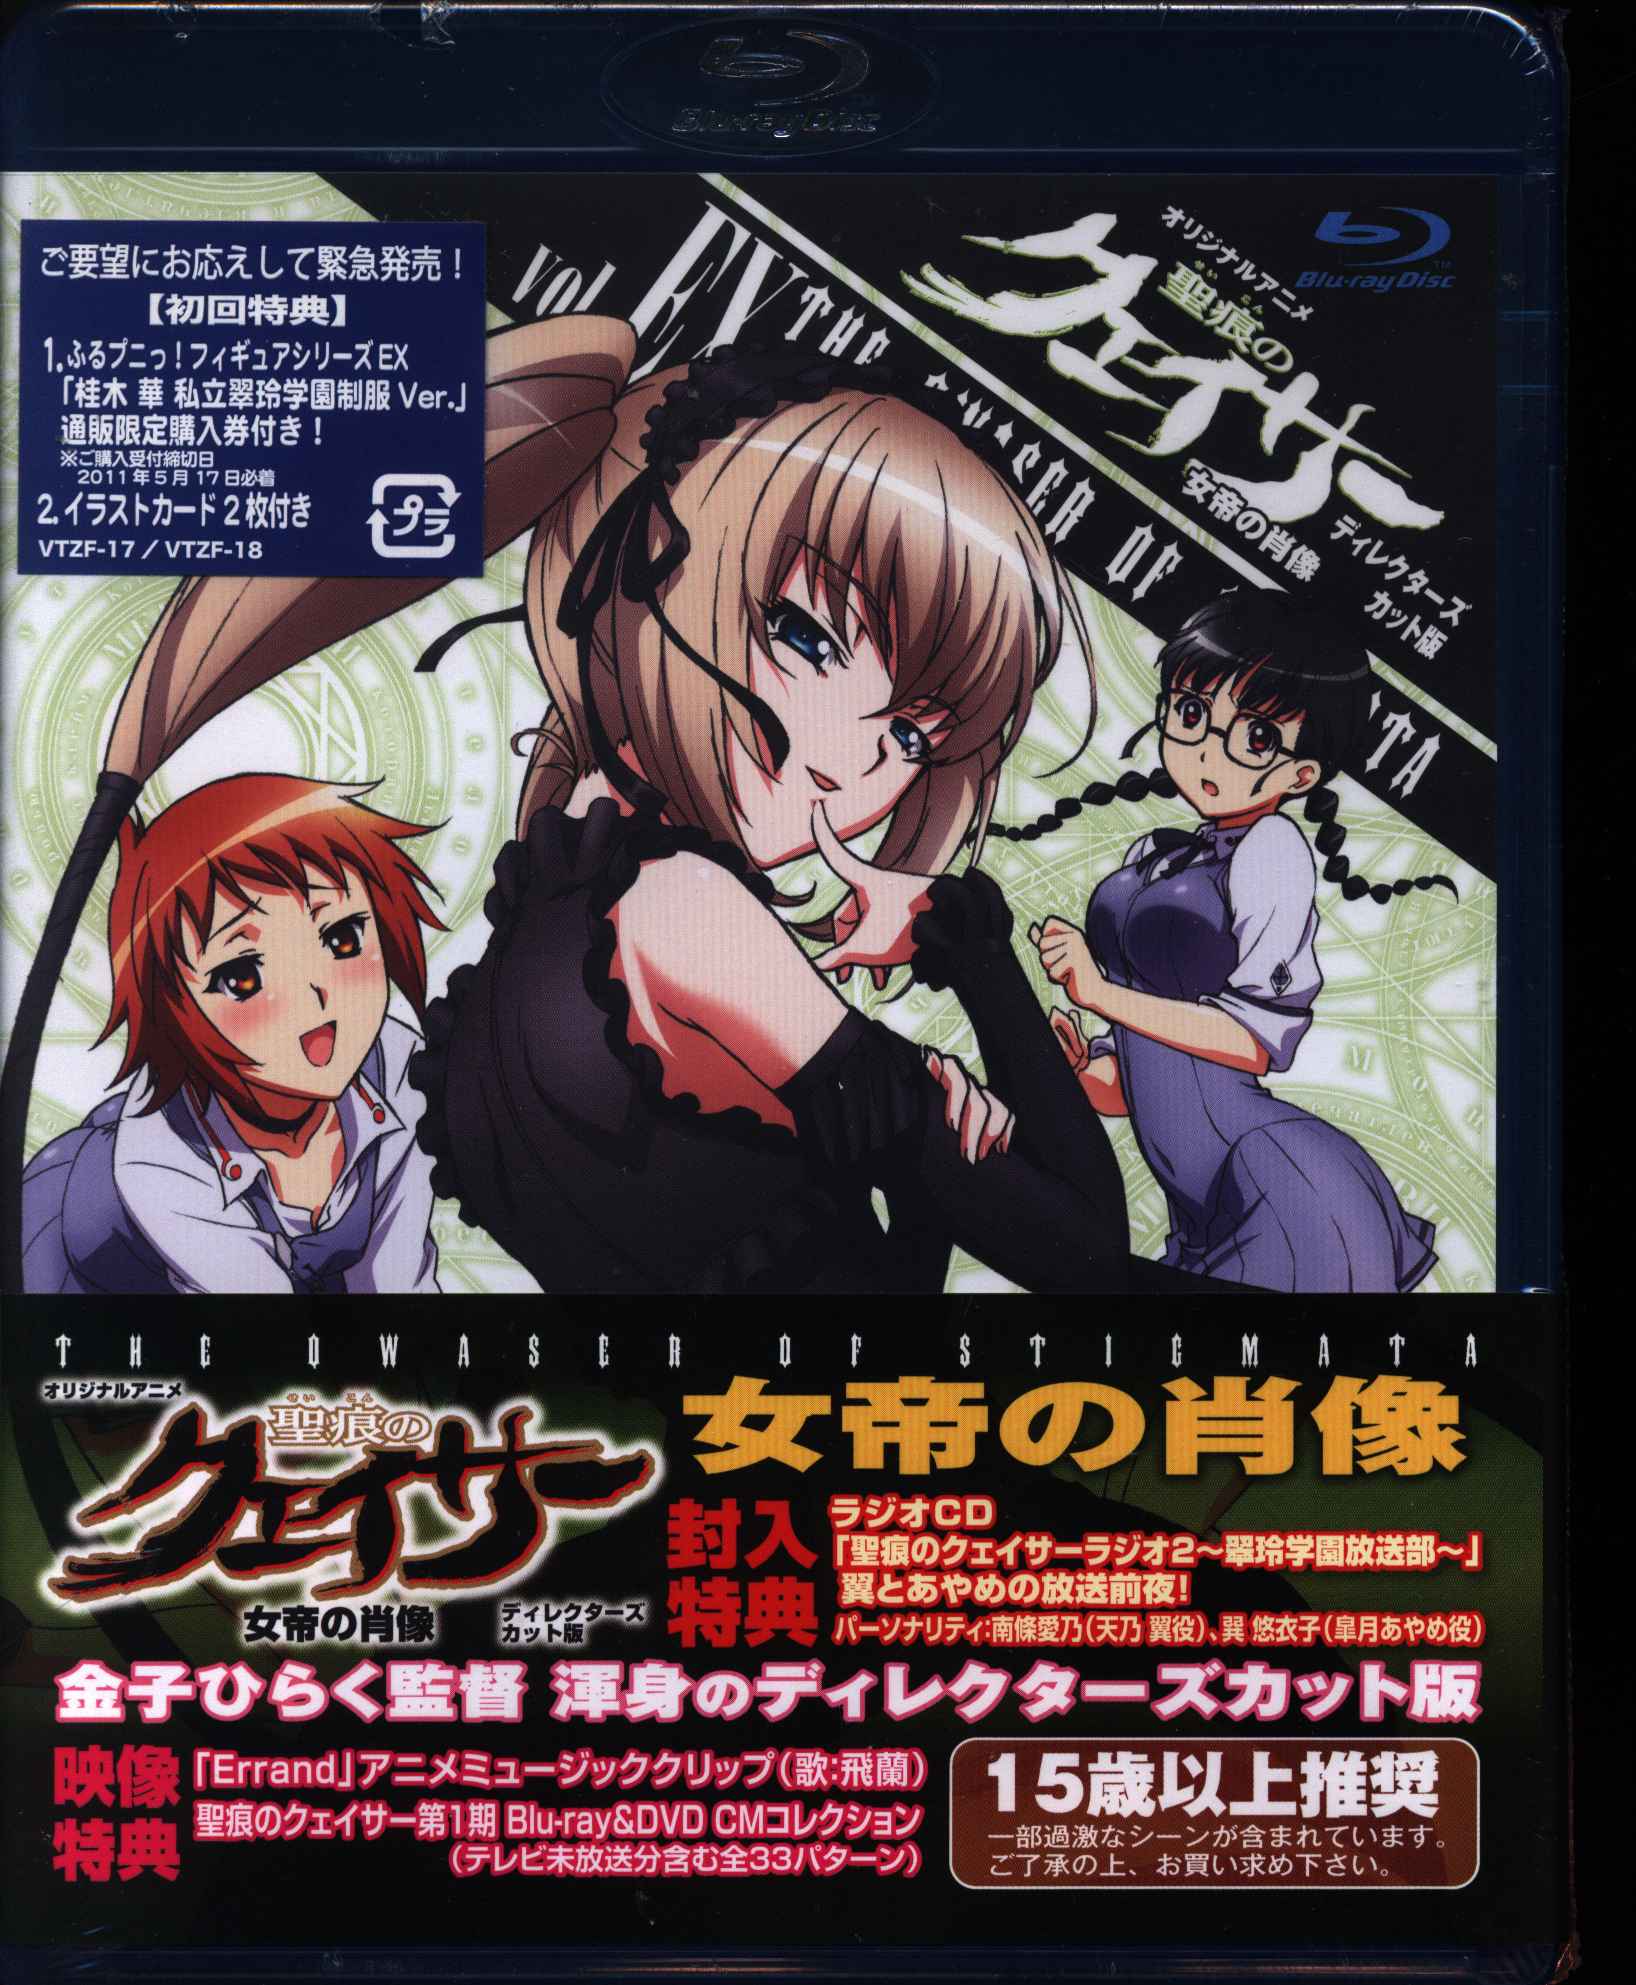 聖痕のクェイサー DVD 第5巻 vol.5 ディレクターズカット版 - ブルーレイ